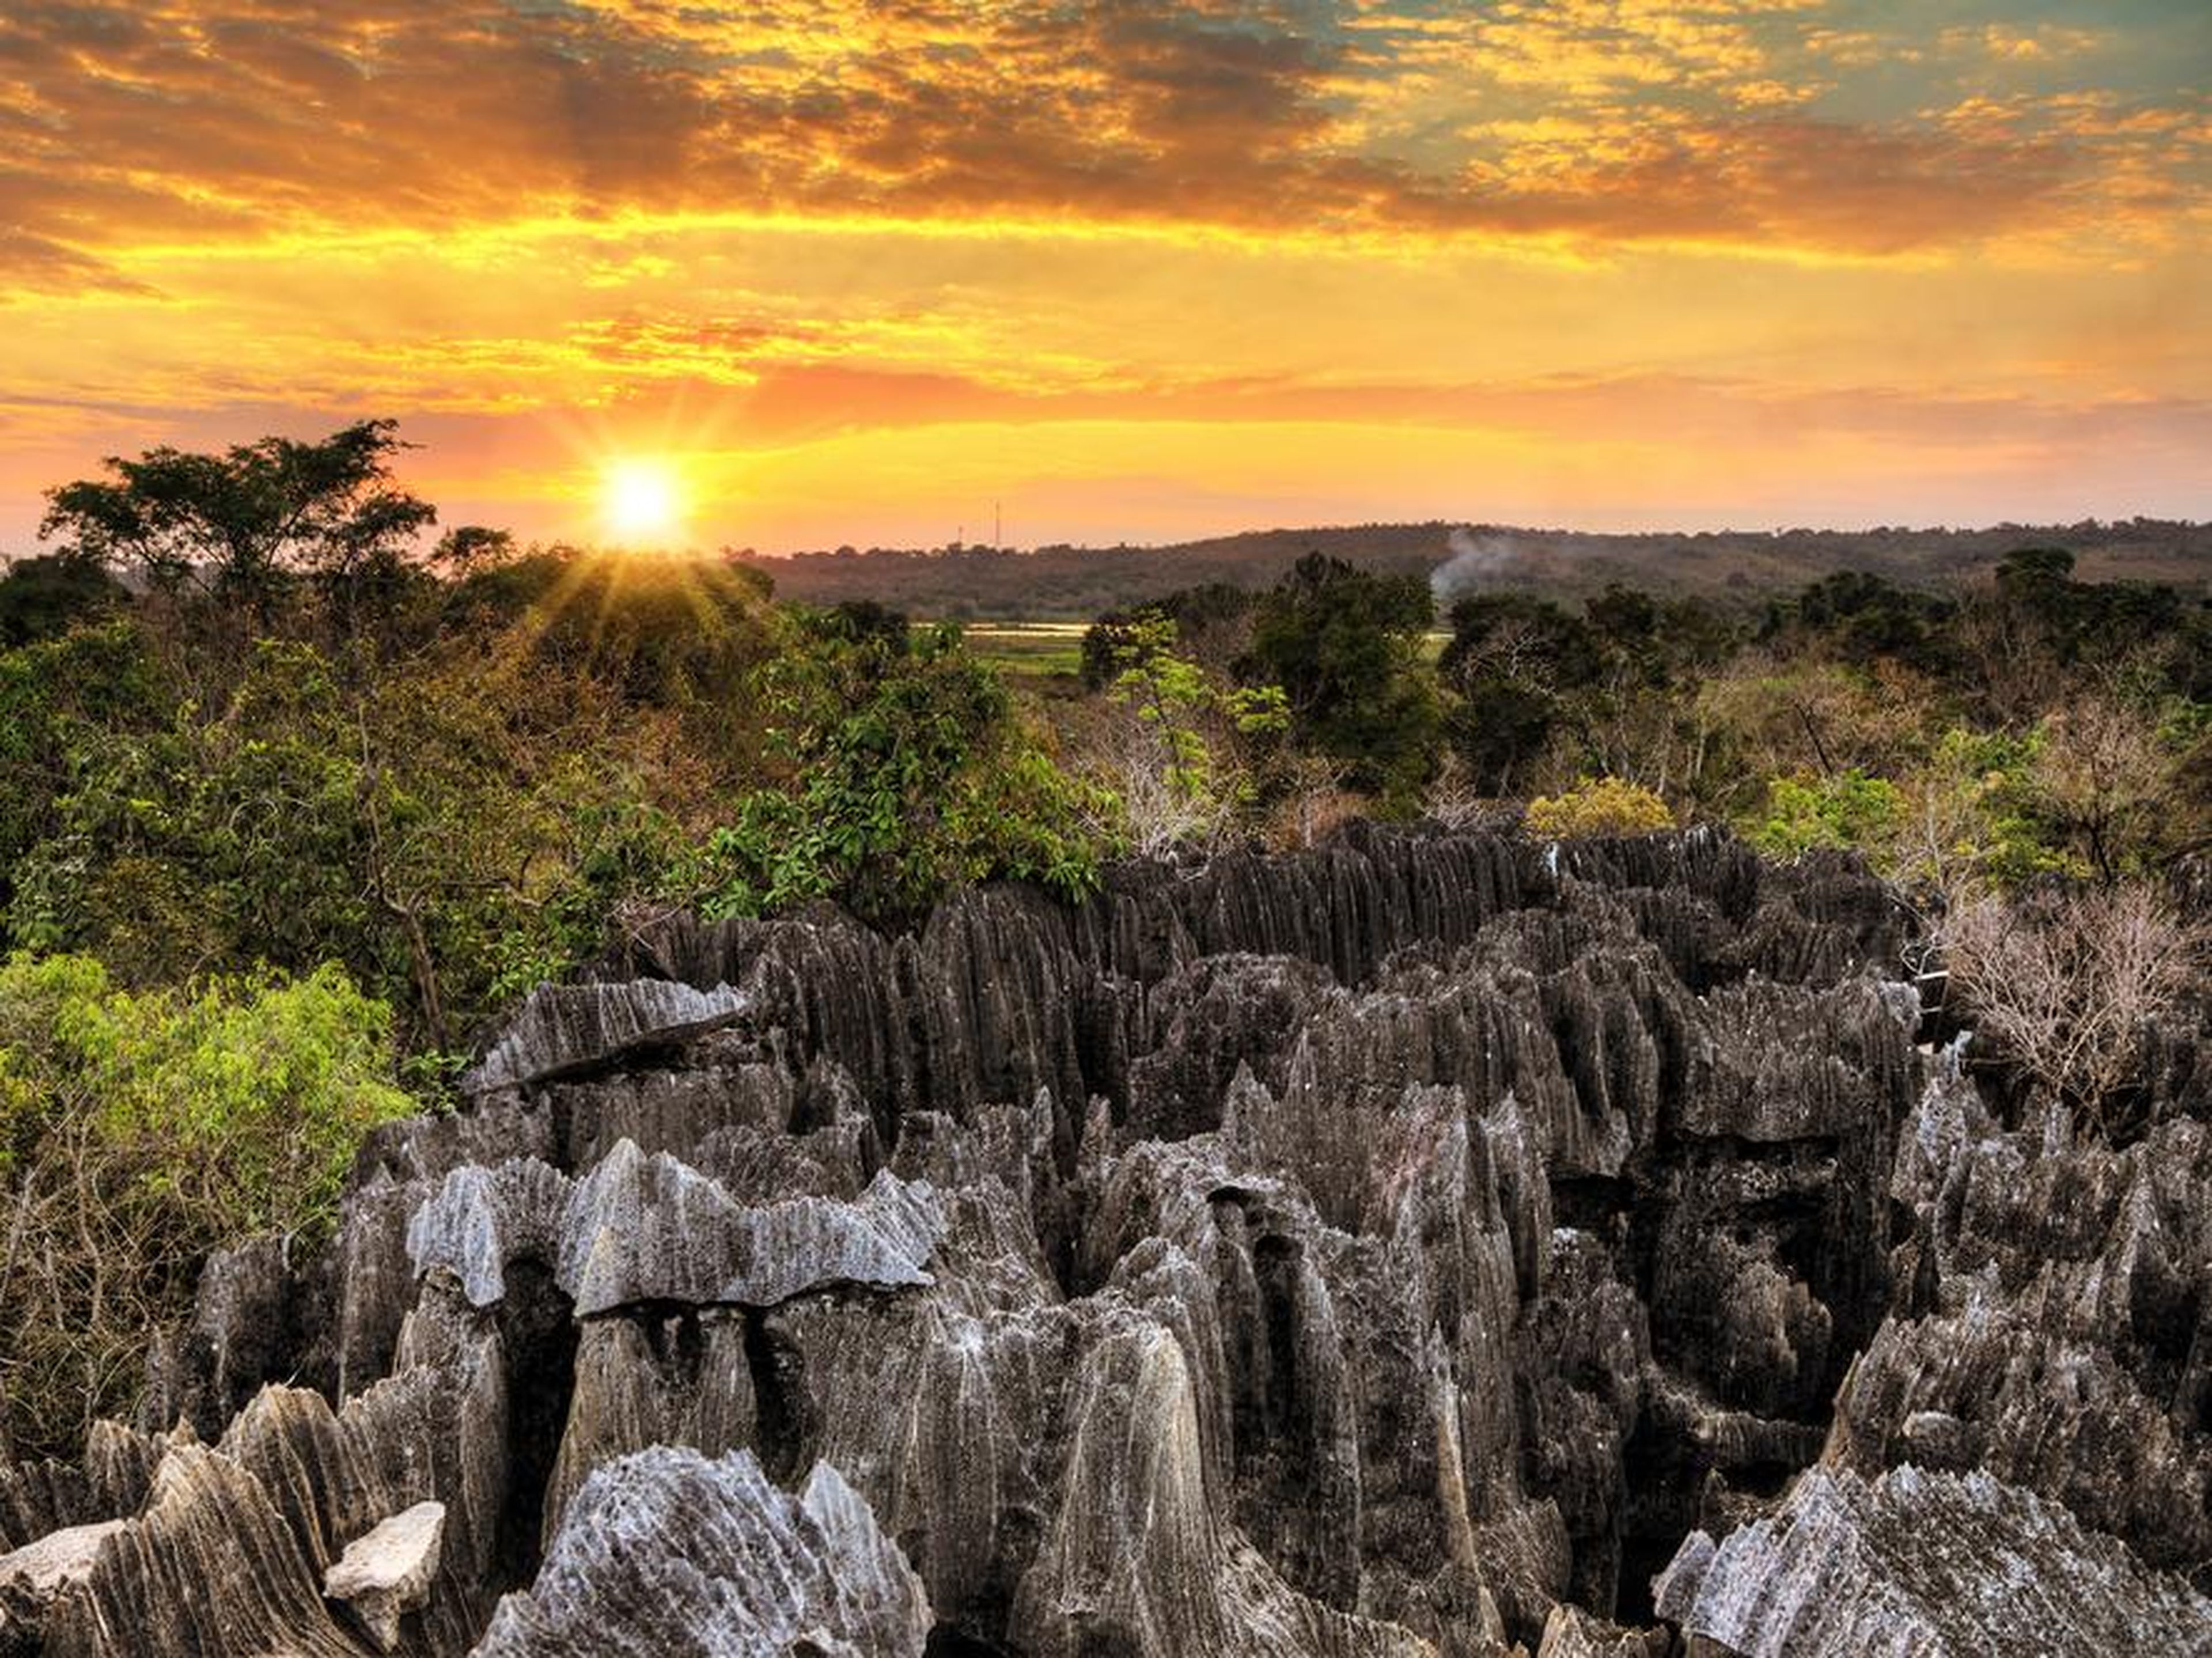 Tsingy es conocida por sus formaciones kársticas, piedra caliza porosa tallada en el tiempo por la lluvia.